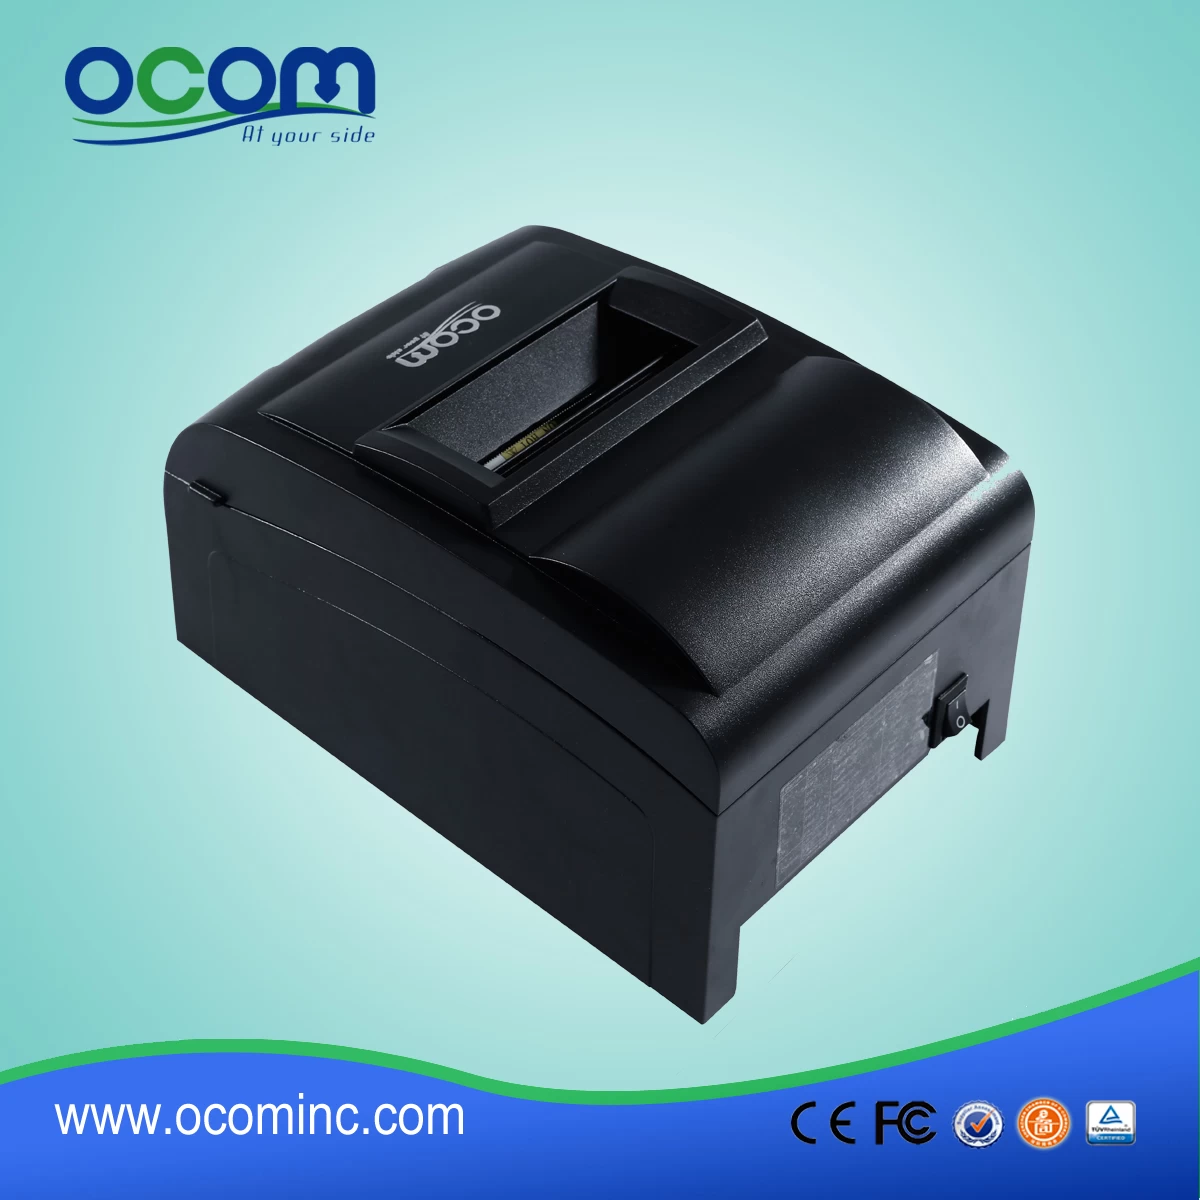 Ocpp-762 76mm Mobile DOT Matrix Receipt Printer for Lottery